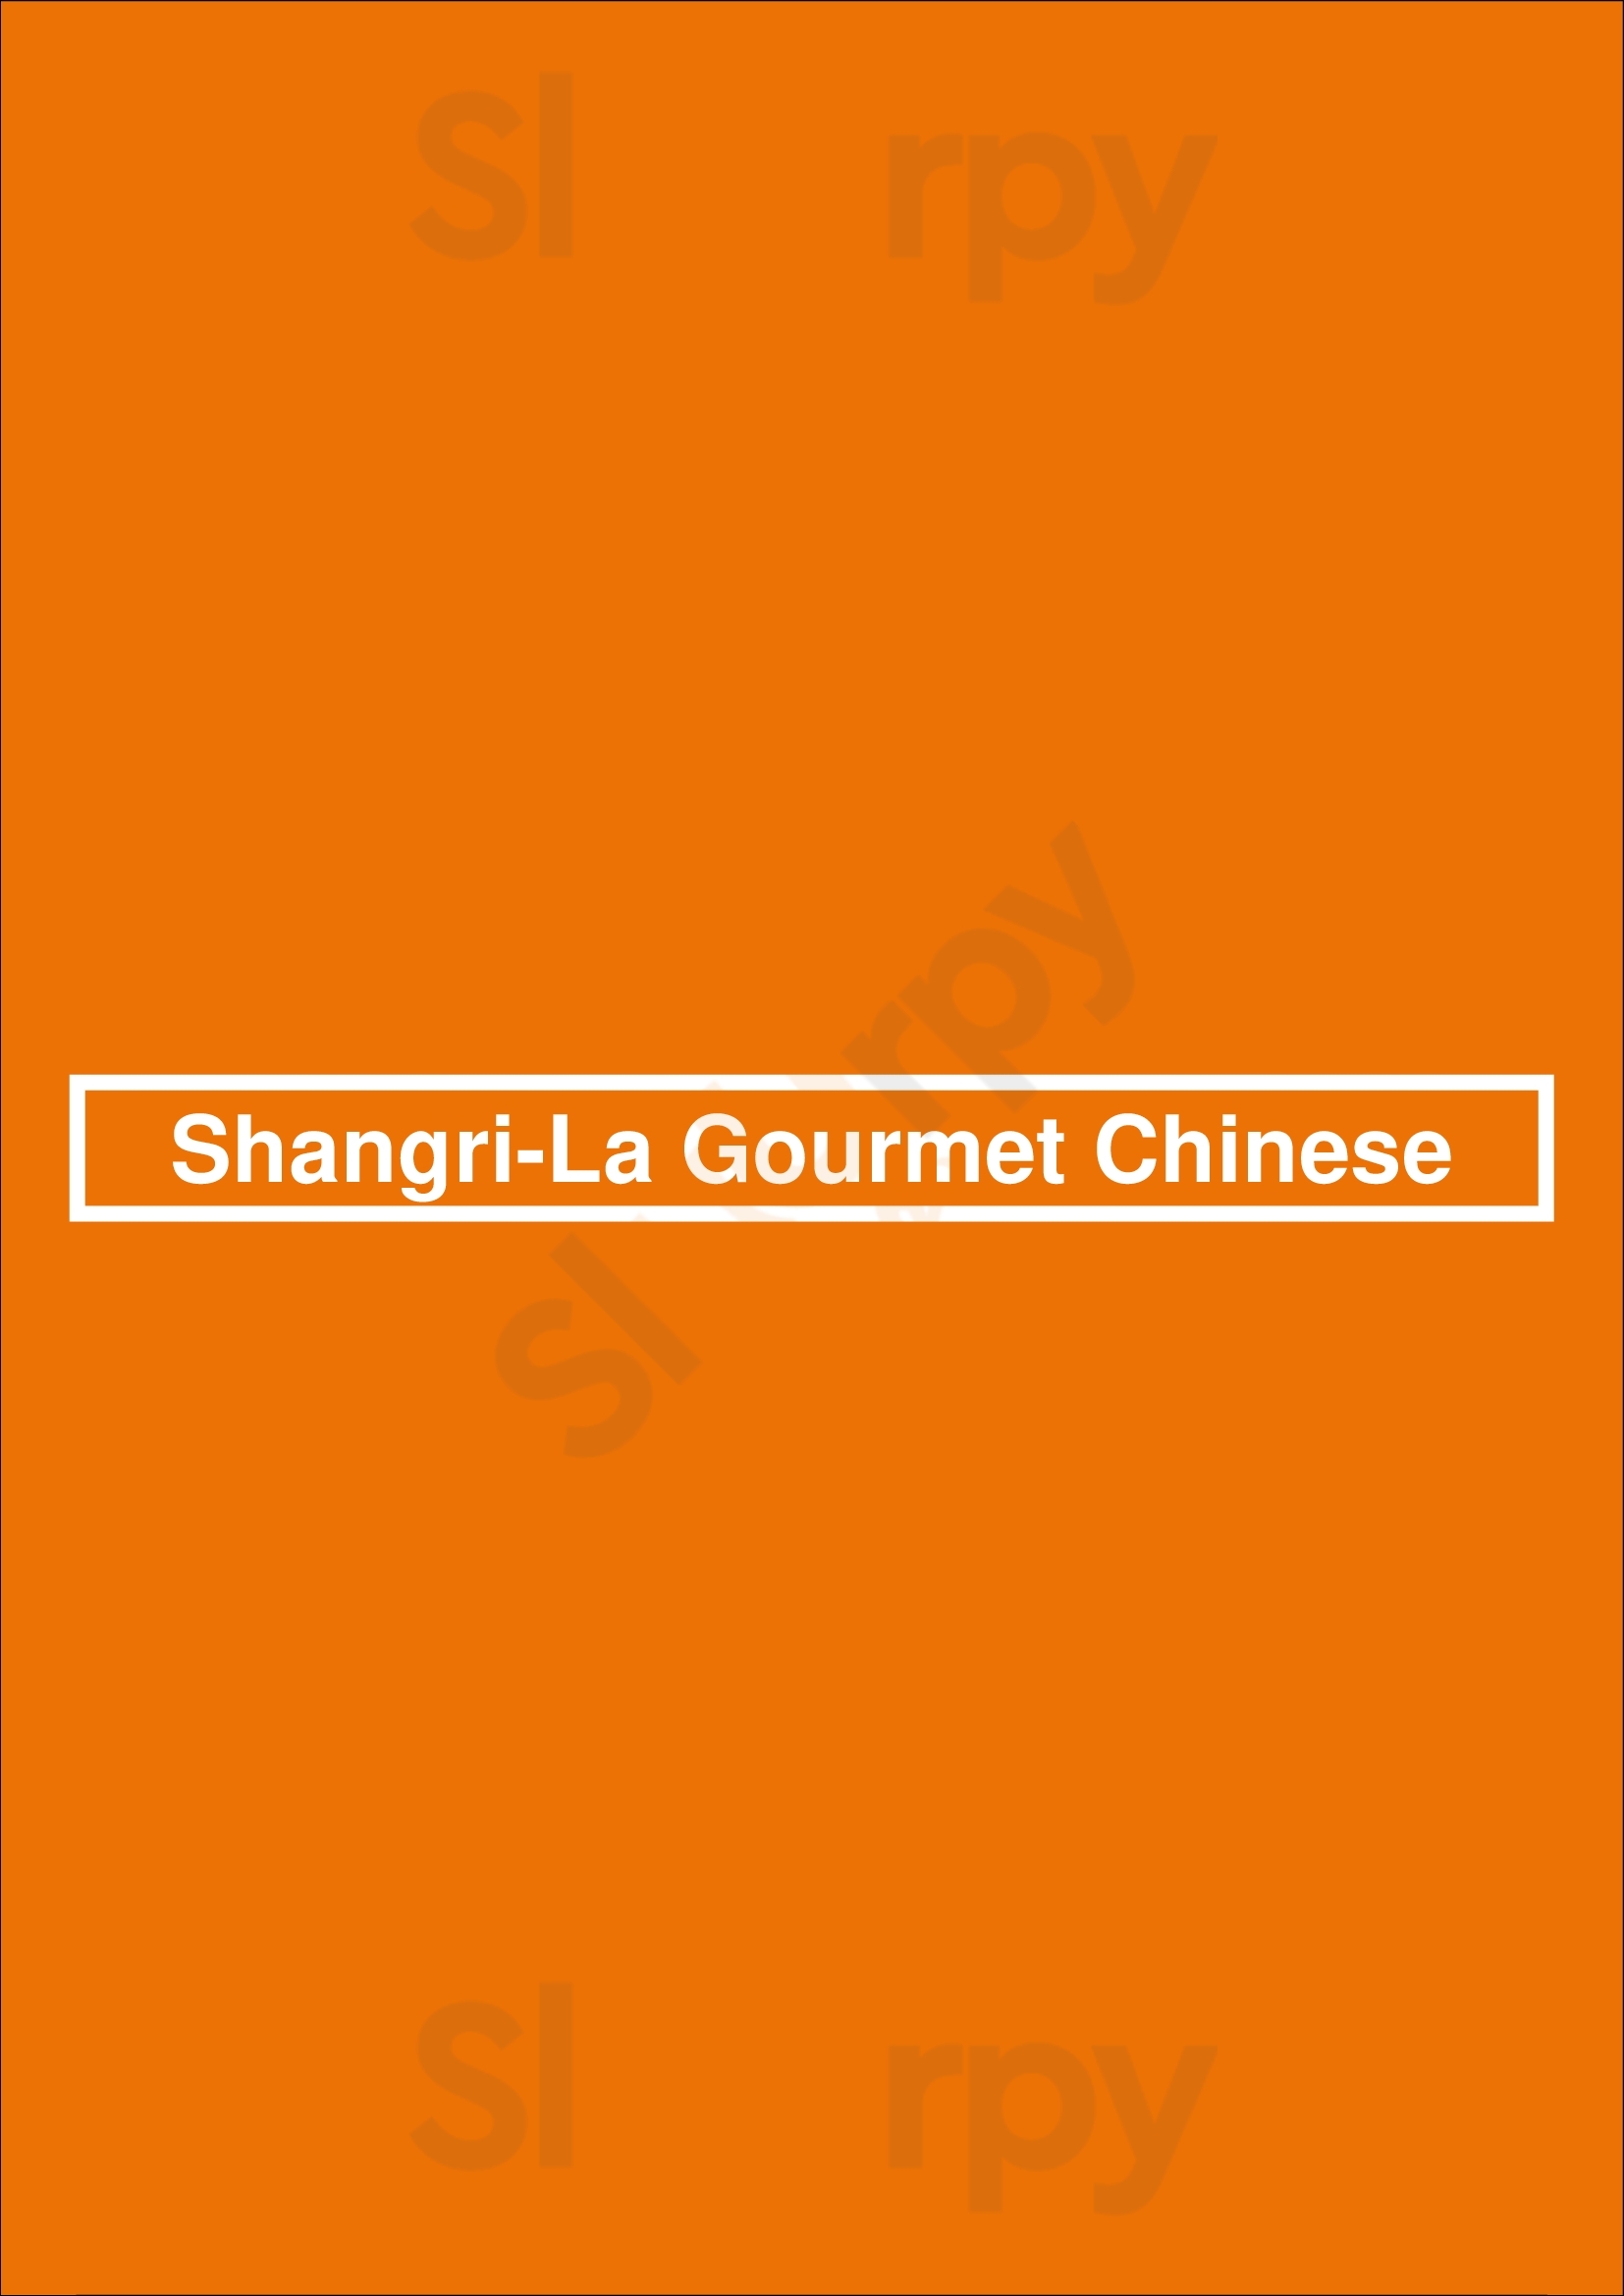 Shangri-la Gourmet Chinese Lake Worth Menu - 1